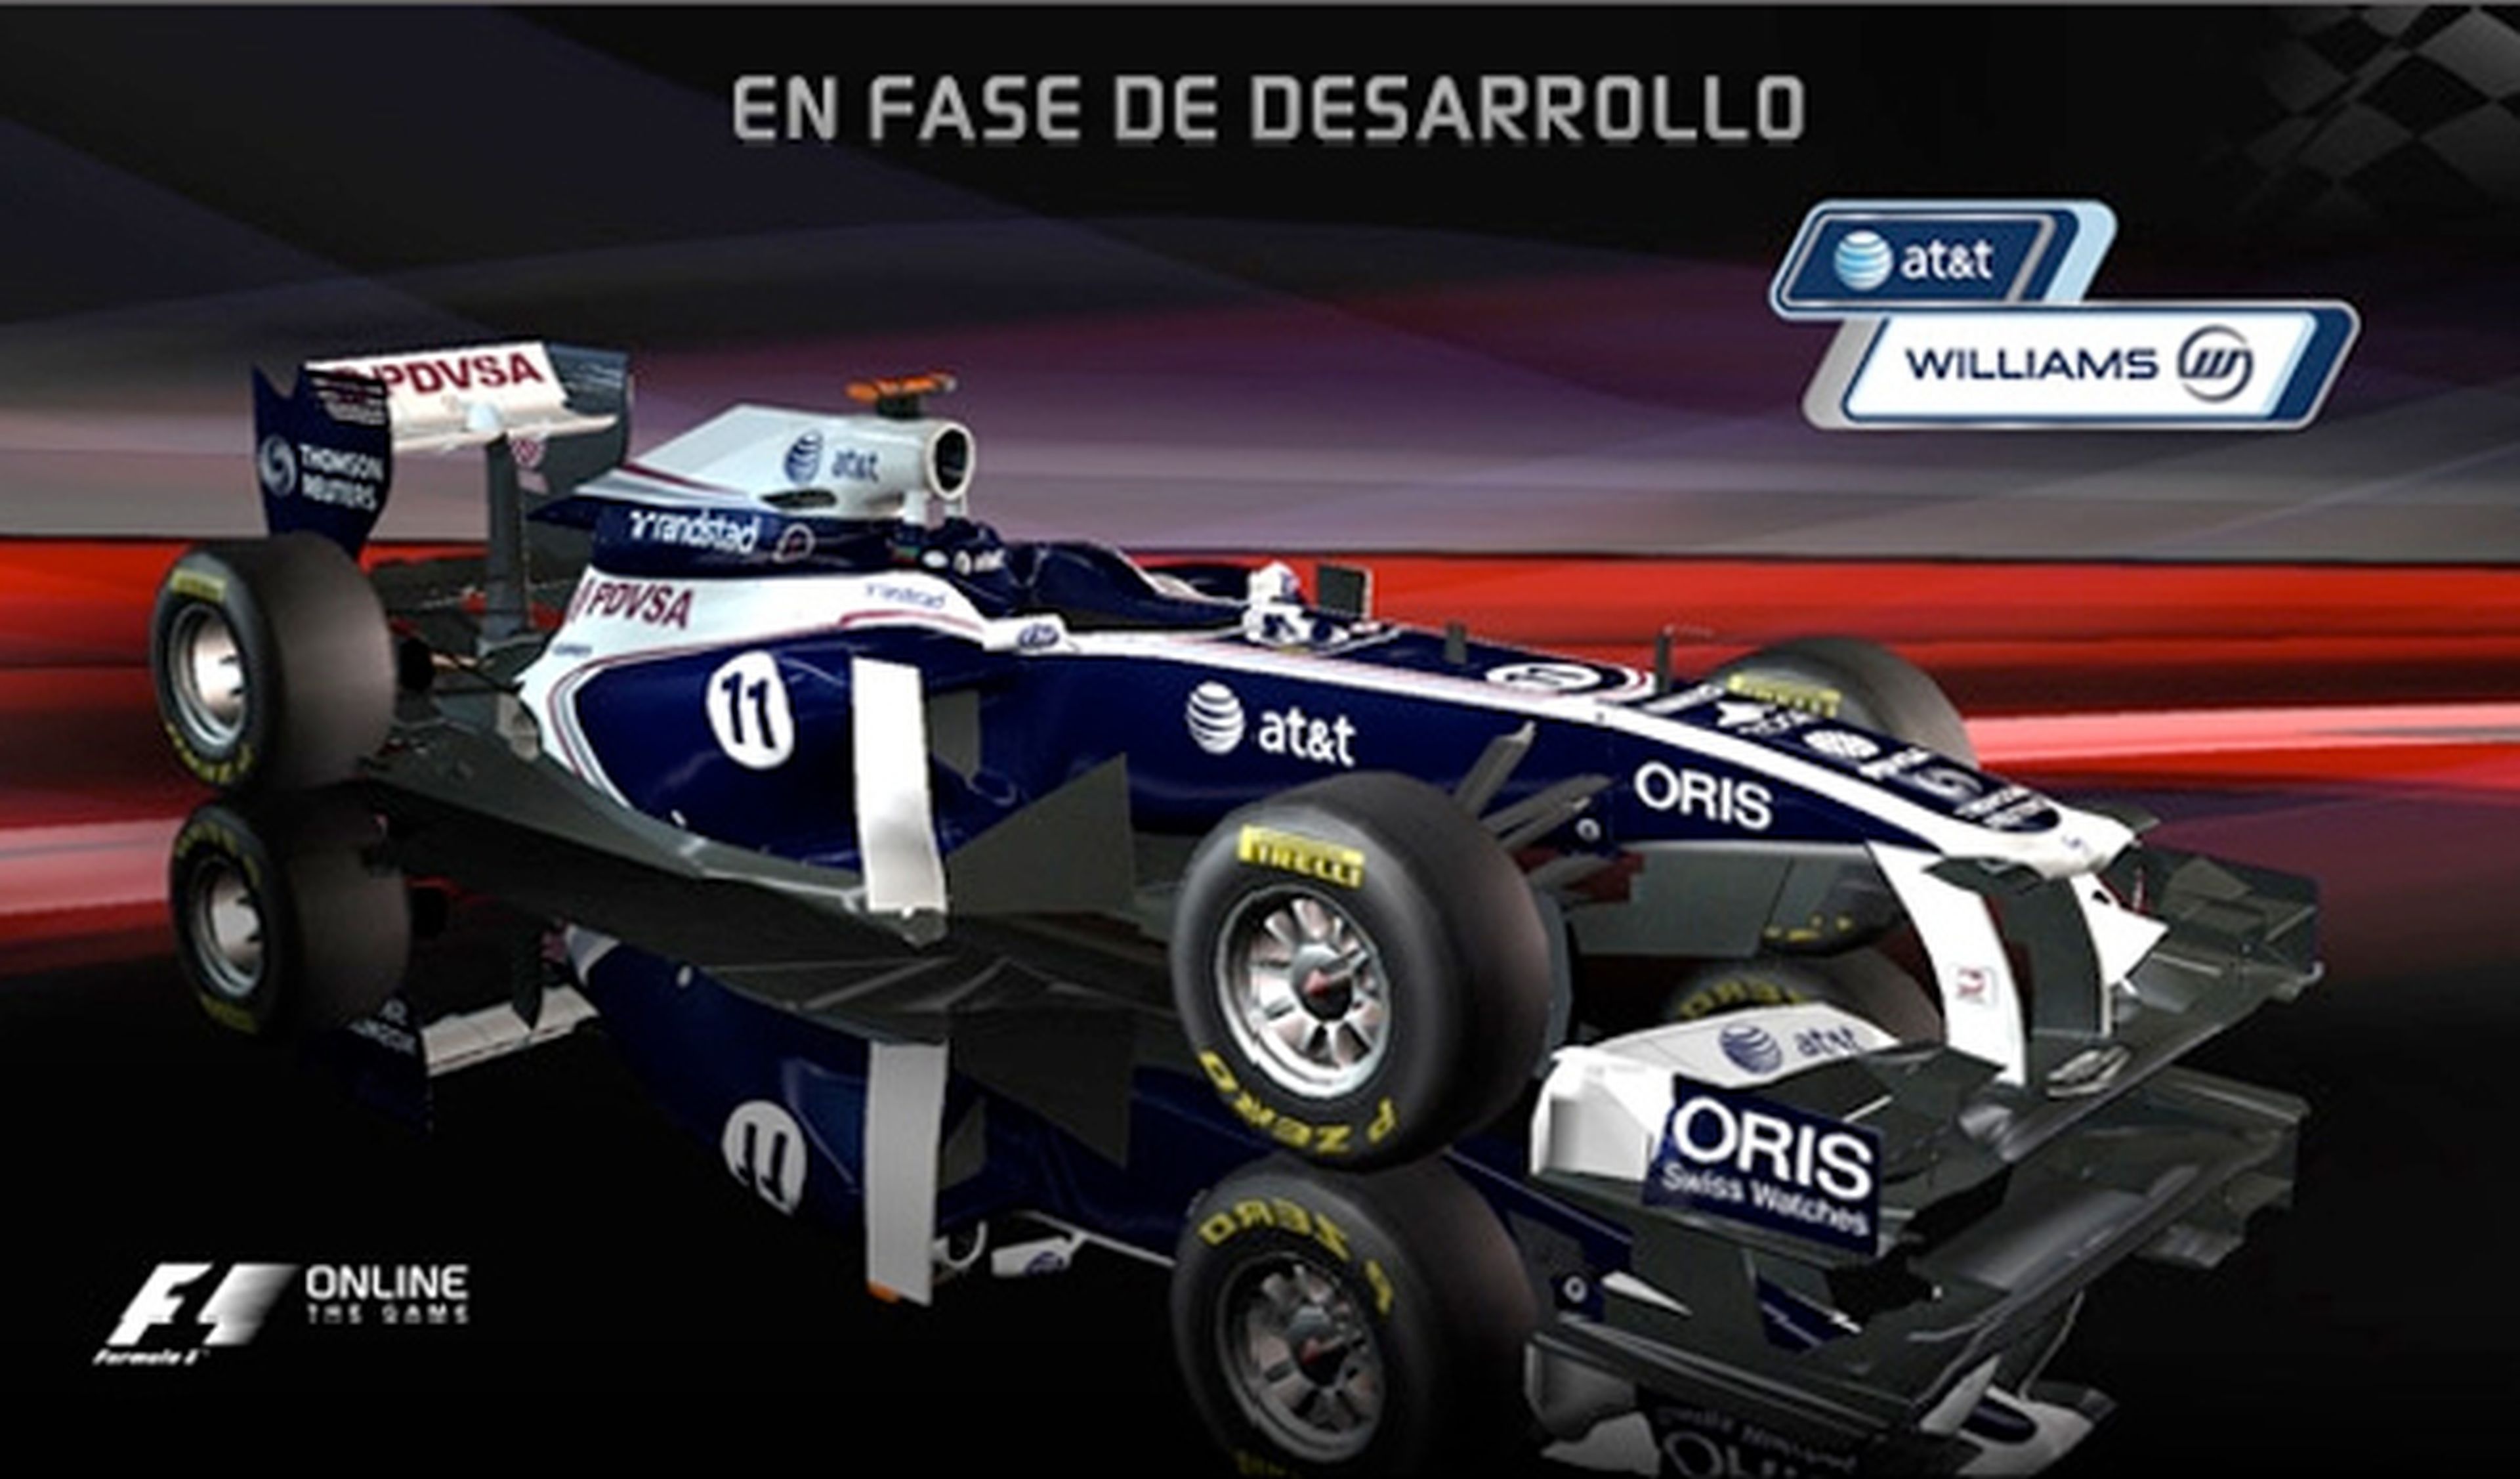 'F1 Online: The Game'. La pasión de las carreras ¡y gratis!